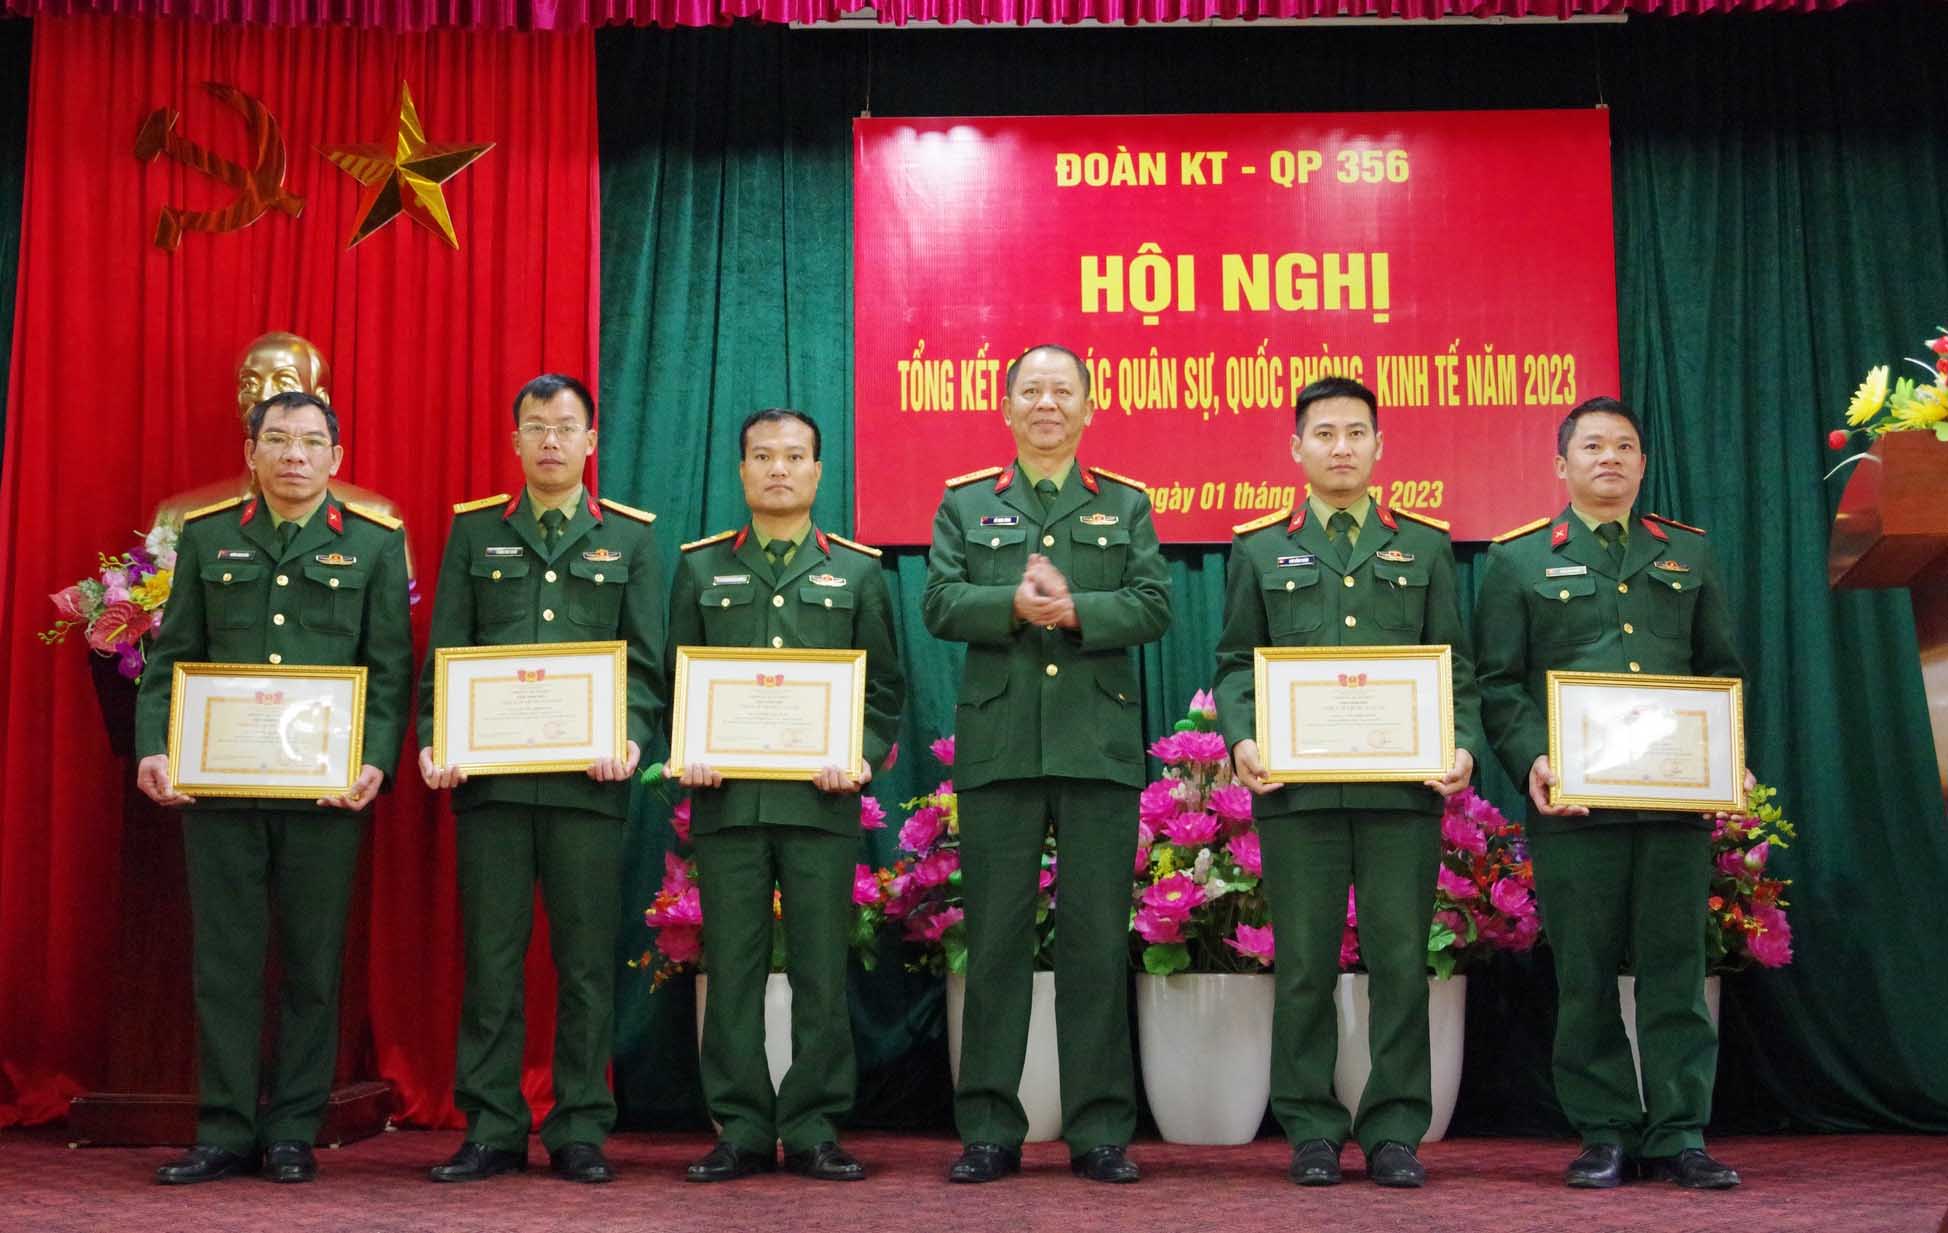 Đại tá Đỗ Ngọc Minh – Phó Bí thư Đảng ủy, Đoàn trưởng Đoàn KTQP 356 trao danh hiệu chiến sỹ thi đua cấp cơ sở năm 2023 cho các cá nhân.